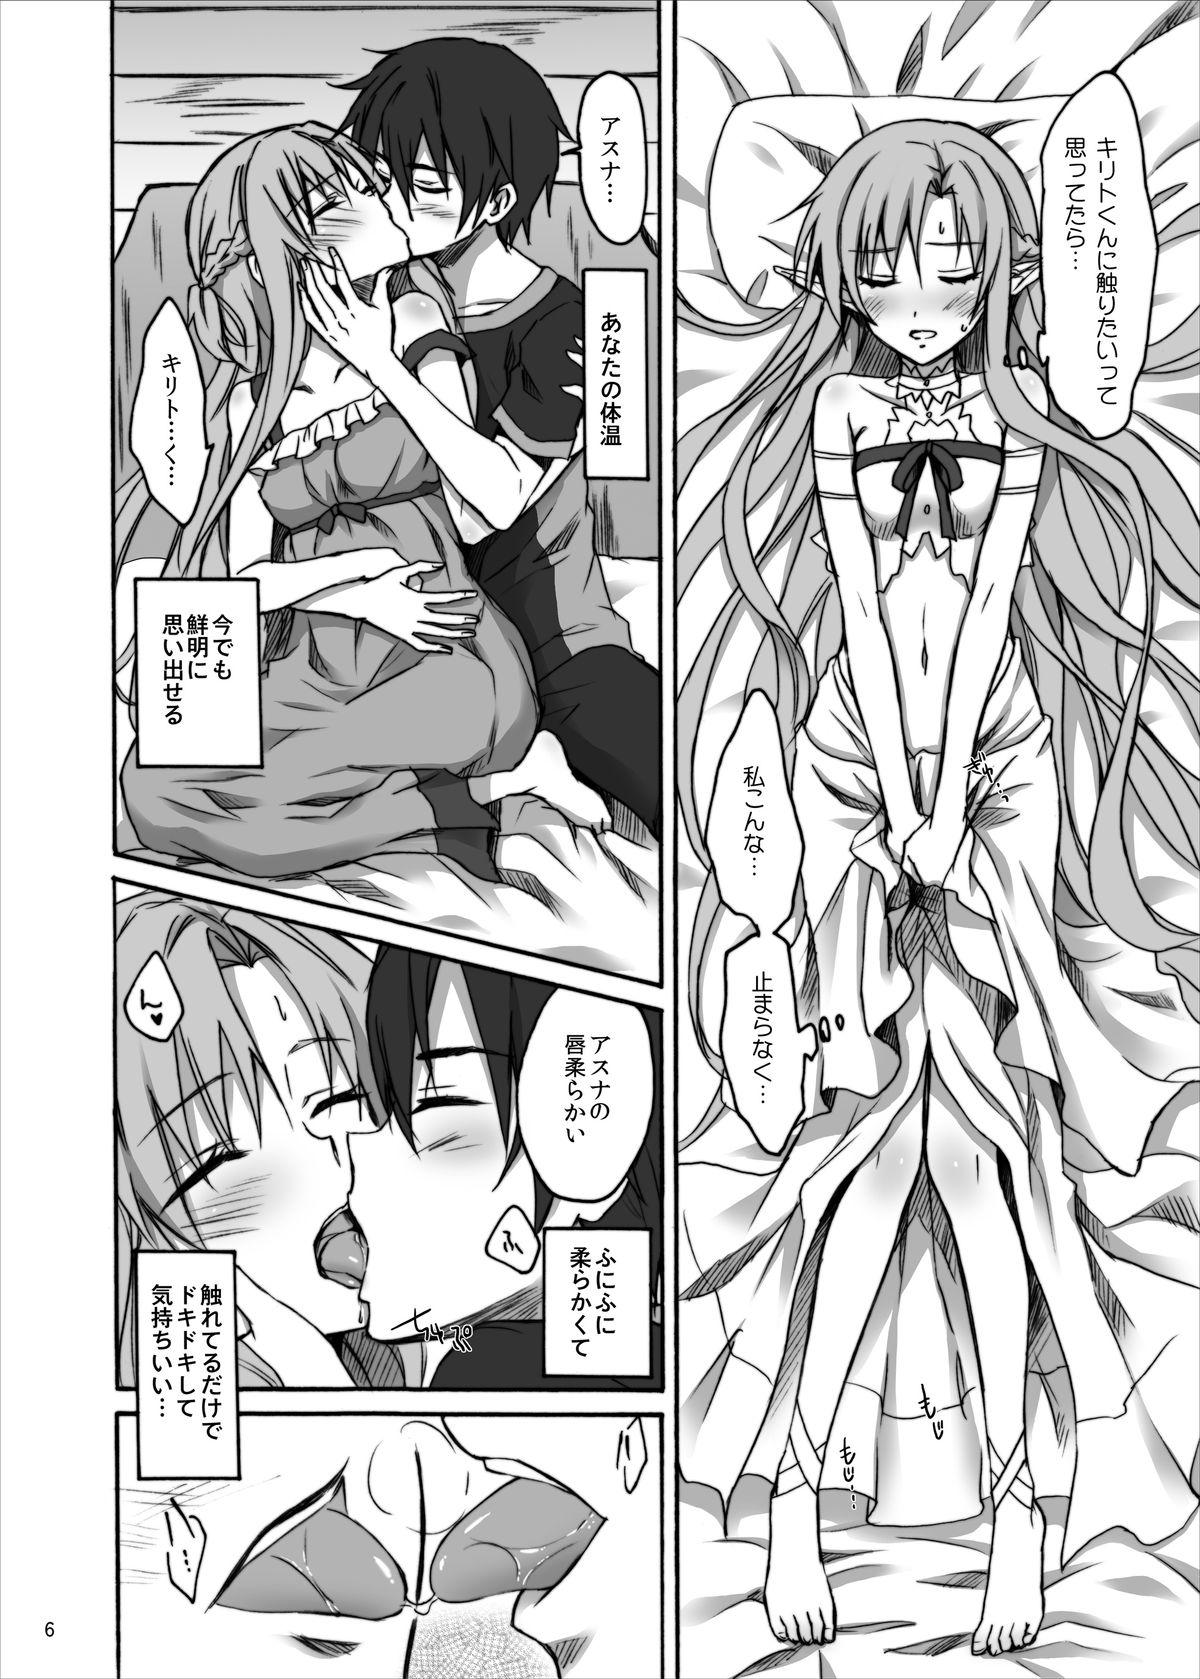 Gordibuena Asuna to Suguha ga Monmon - Sword art online Porno - Page 5